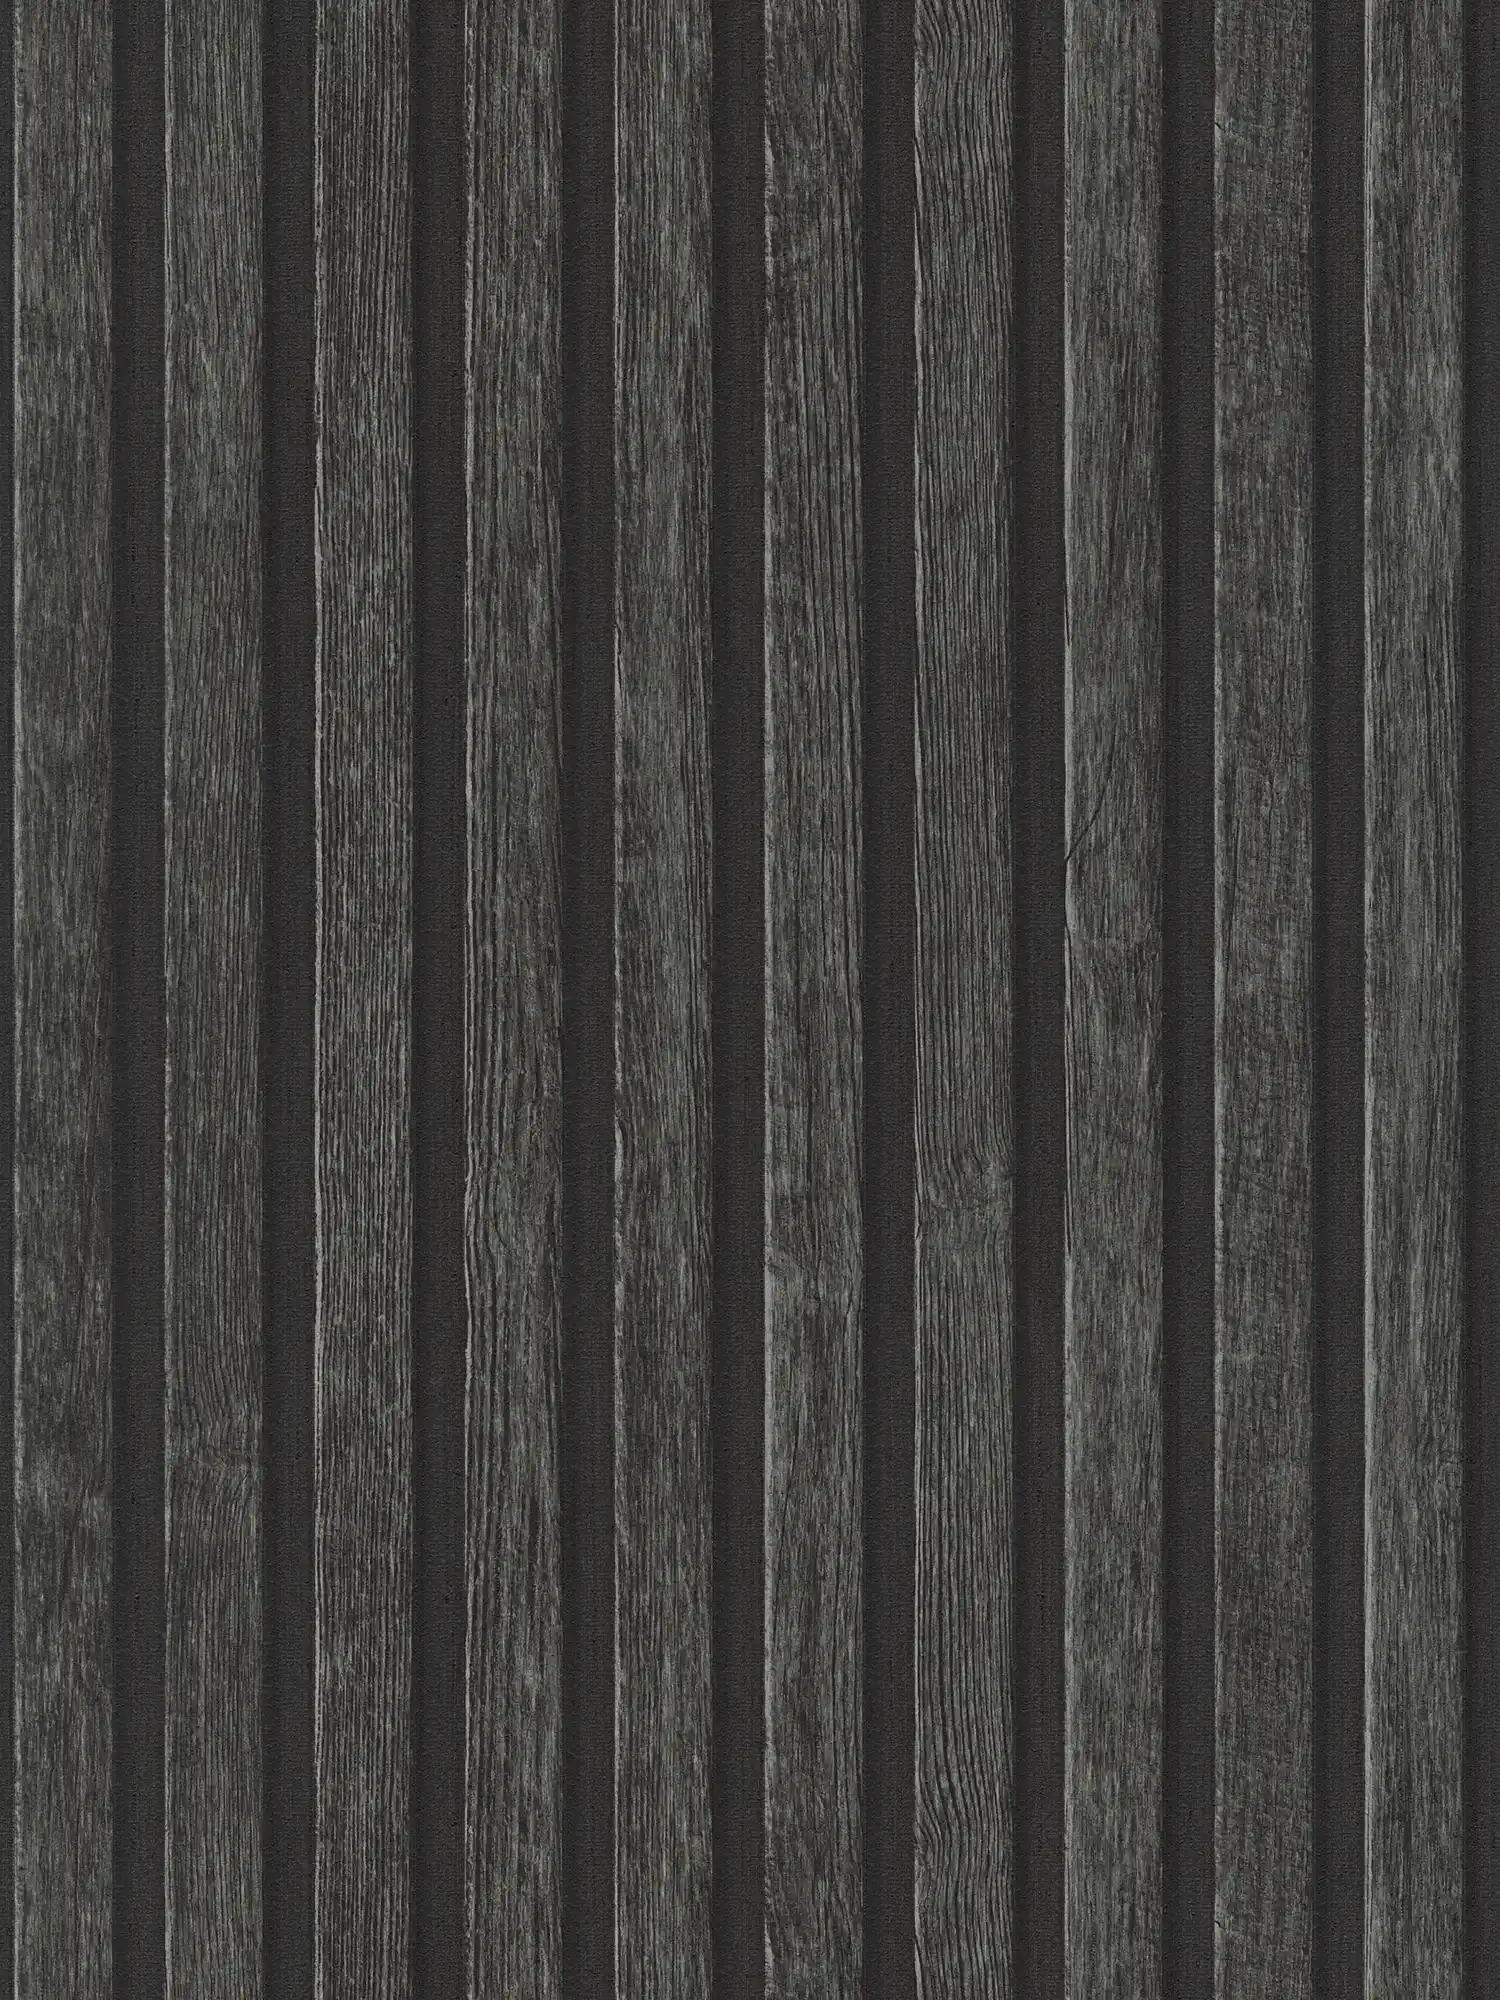         Onderlaag behang in houtlook met paneelmotief - zwart, bruin
    